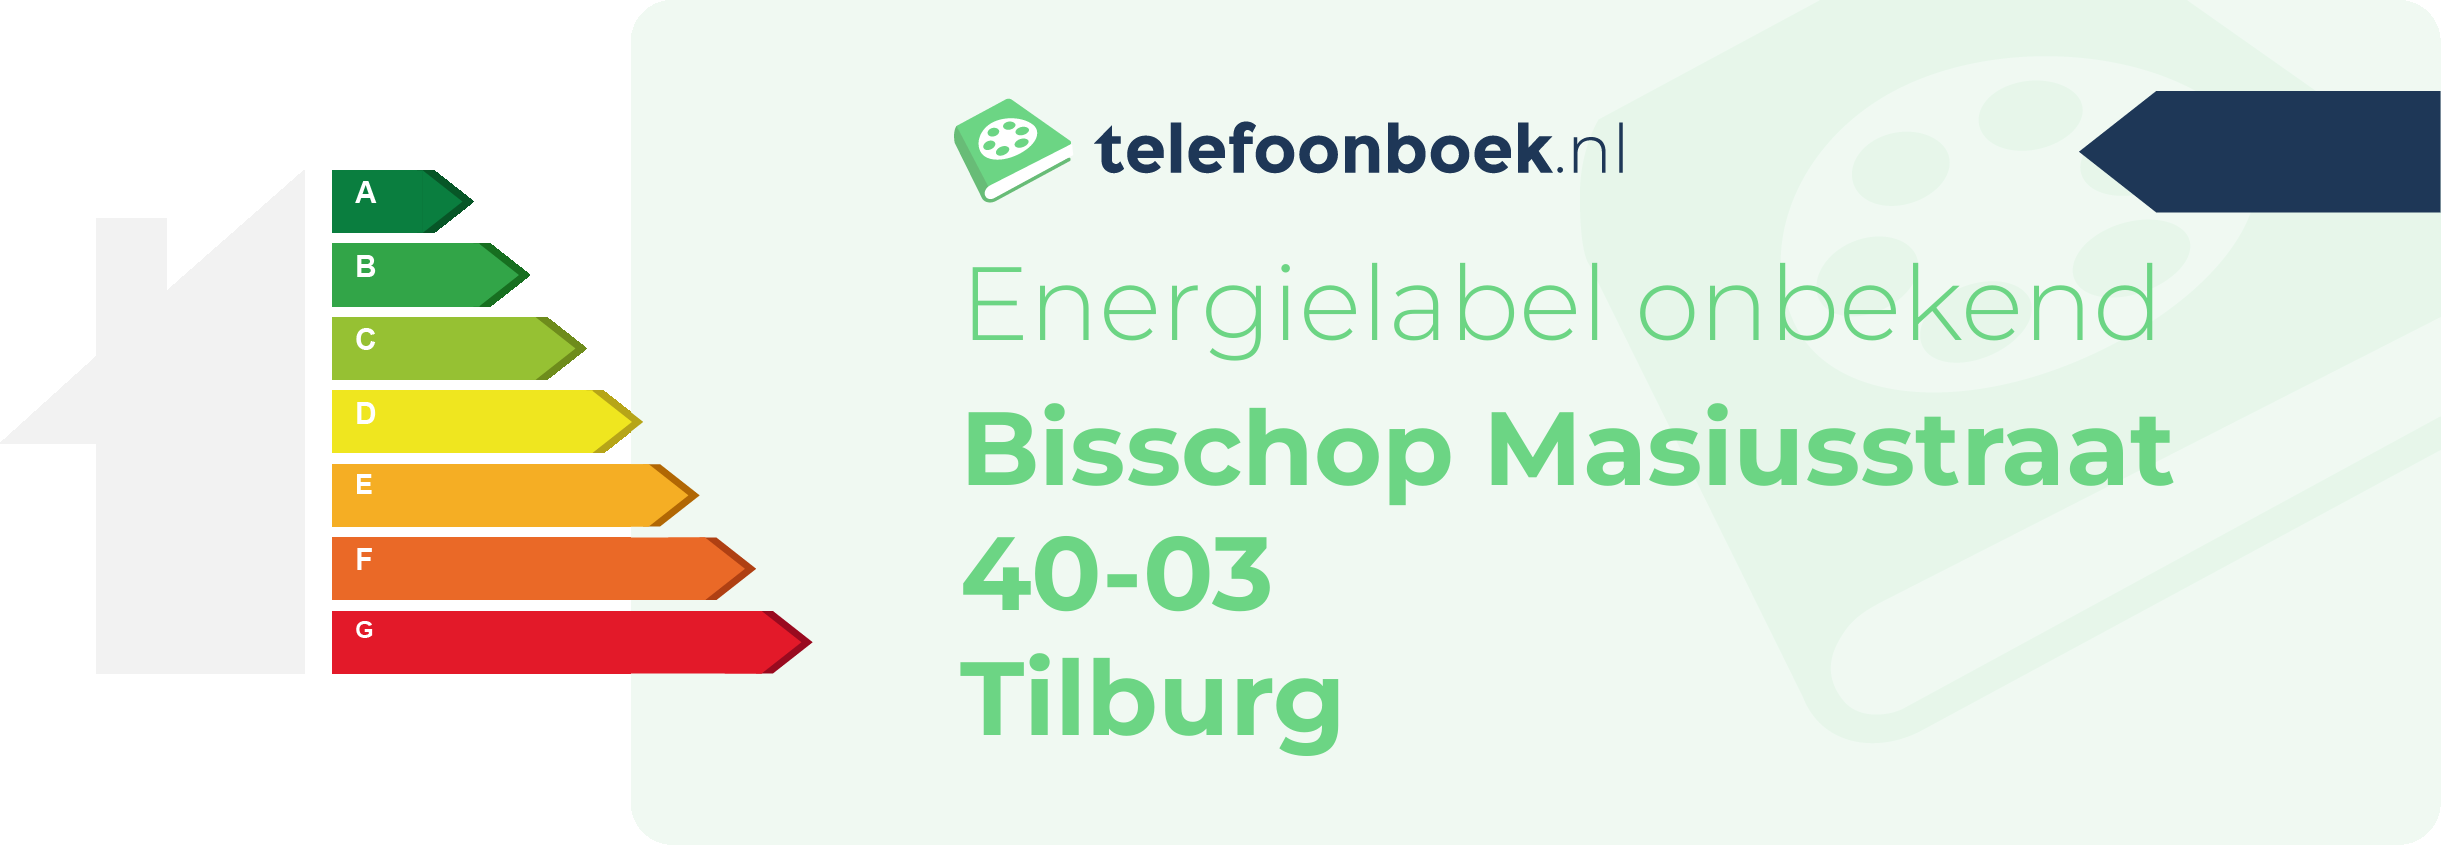 Energielabel Bisschop Masiusstraat 40-03 Tilburg